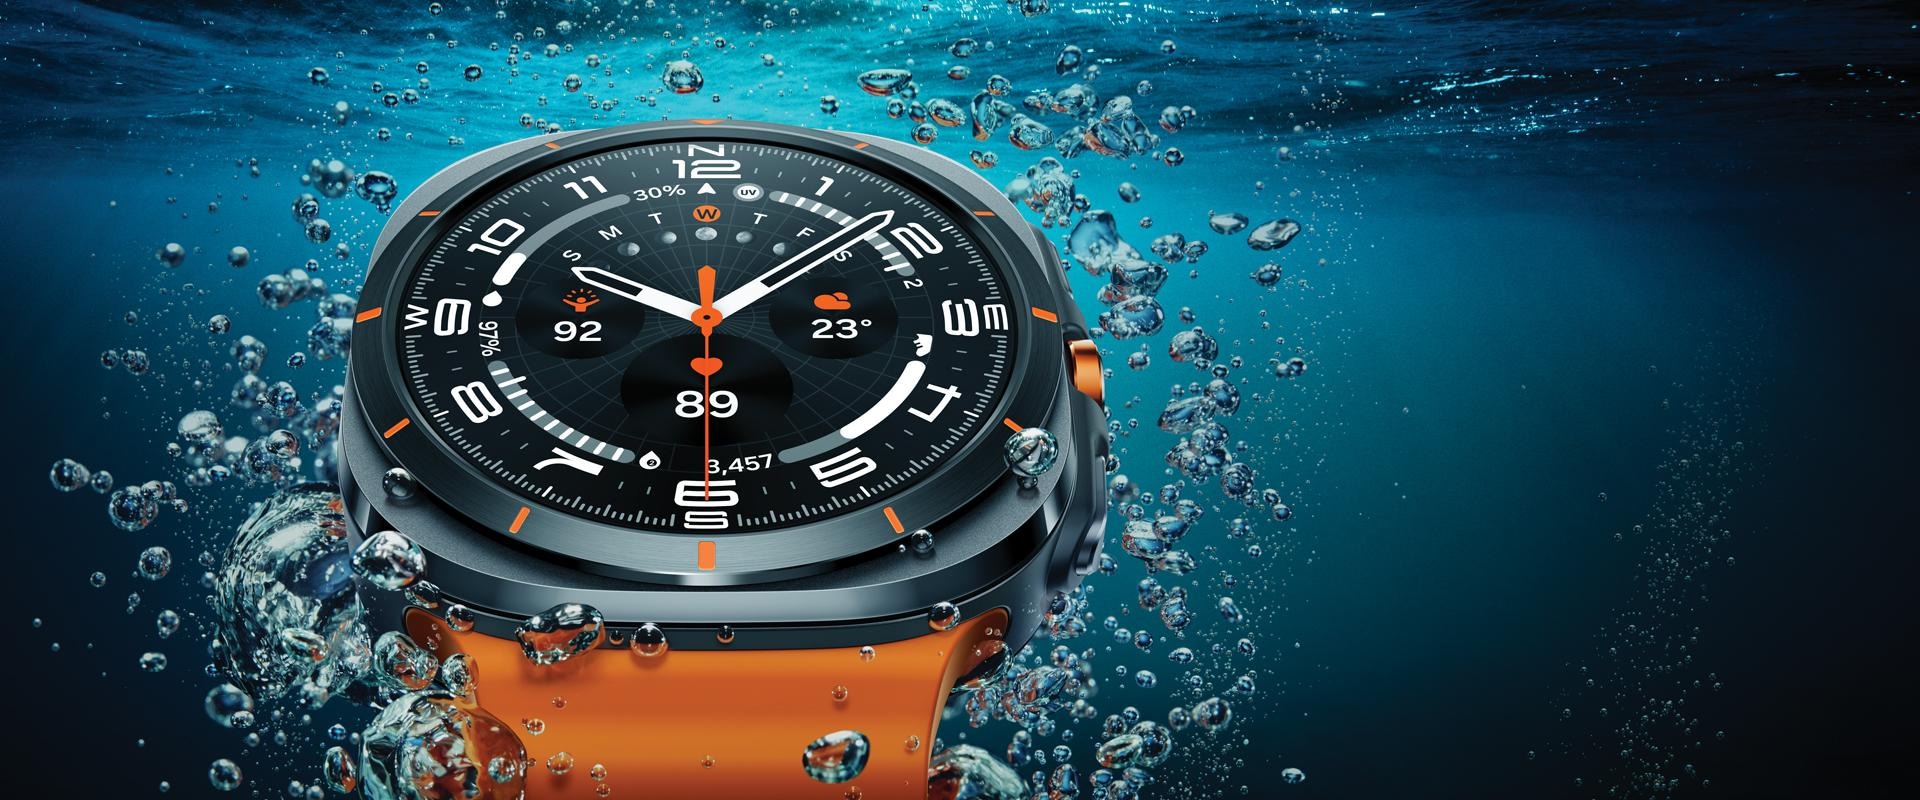 Galaxy Watch Ultra lähivaates vees, esitledes selle disaini nii, et kell tõuseb justkui veepinnale.